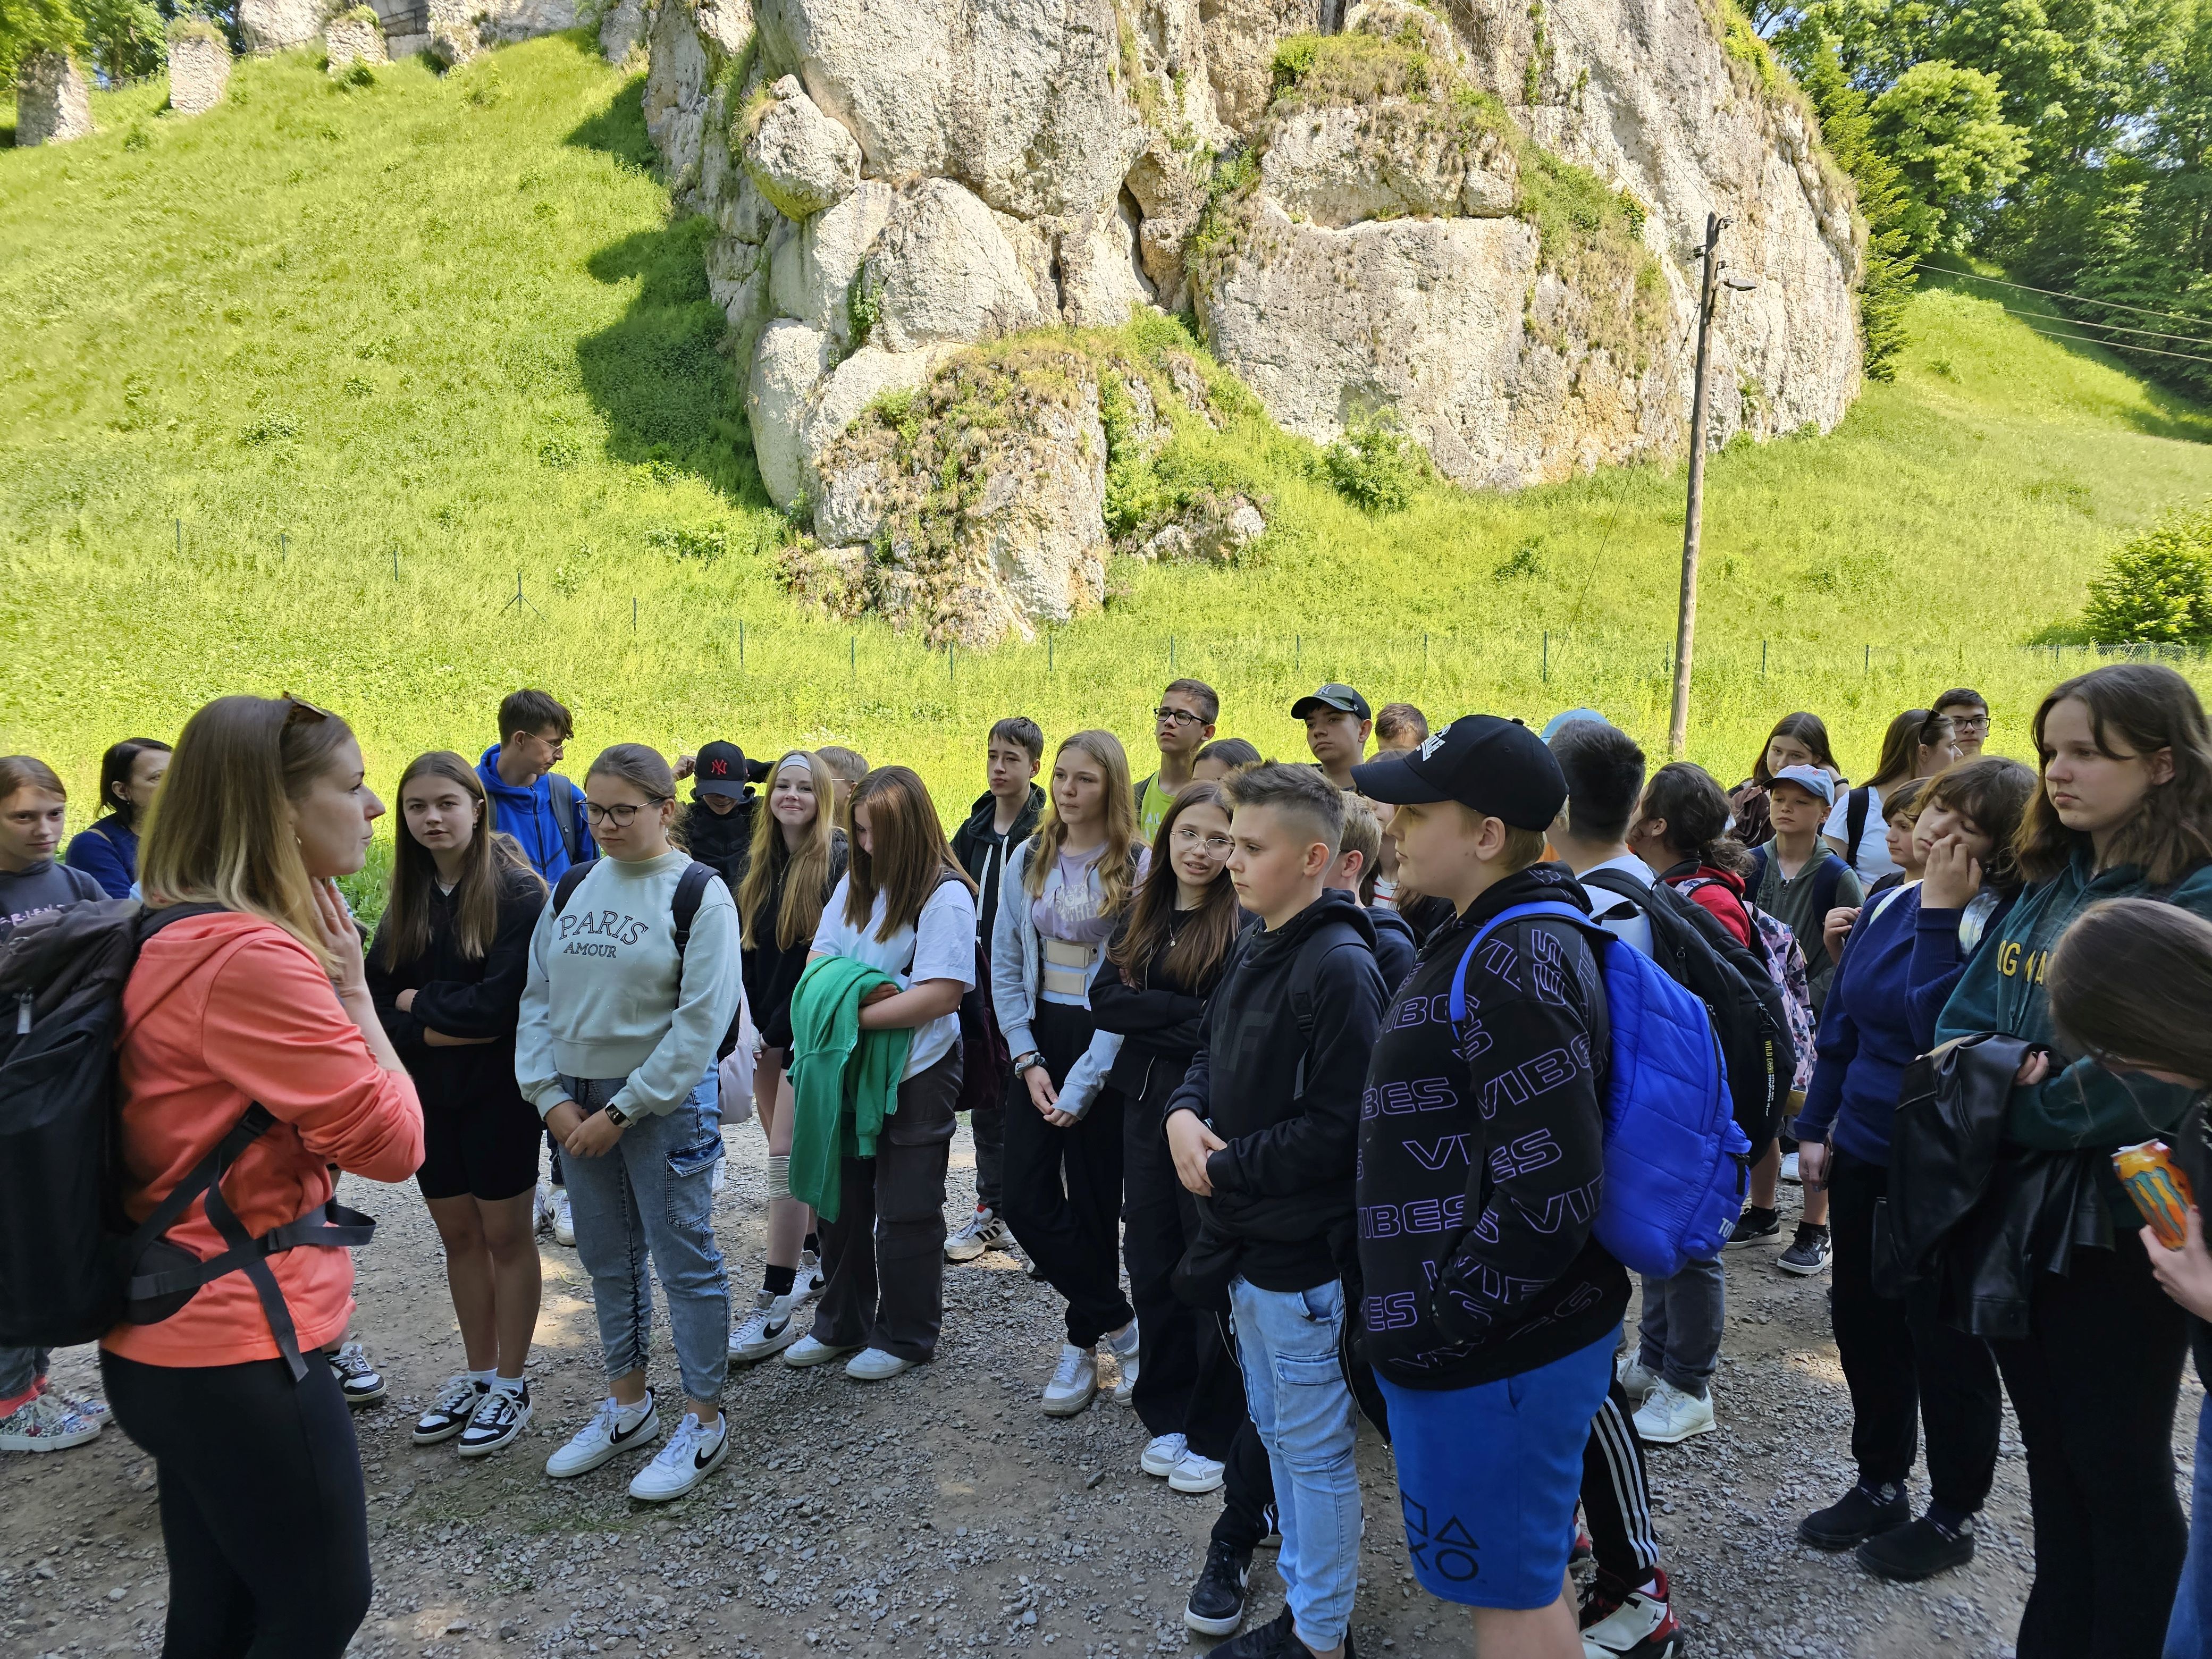 Grupa uczniów słucha przewodnika podczas zwiedzania Ojcowskiego Parku Narodowego